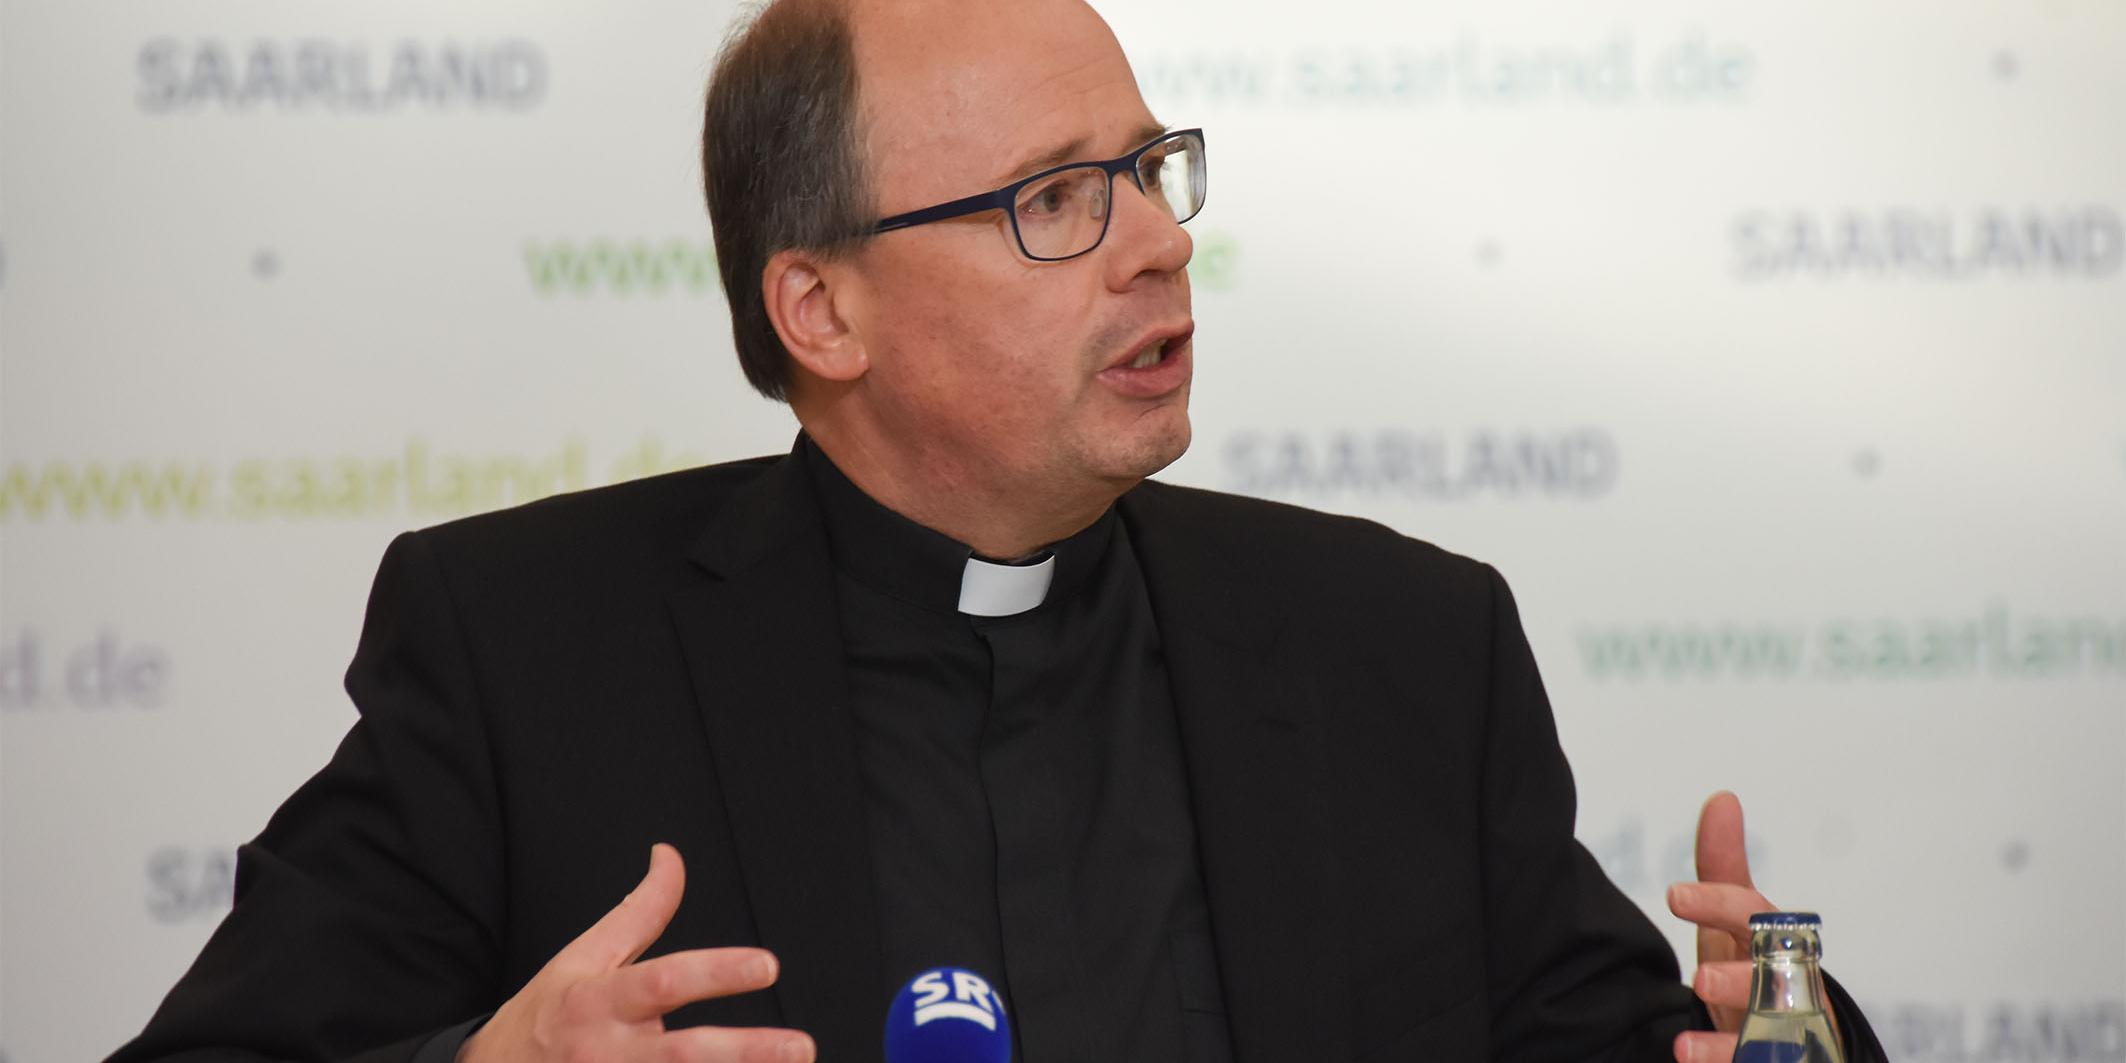 Bischof Dr. Stephan Ackermann stellte sich bei der anschließenden Landespressekonferenz den Fragen der Medienvertreter.